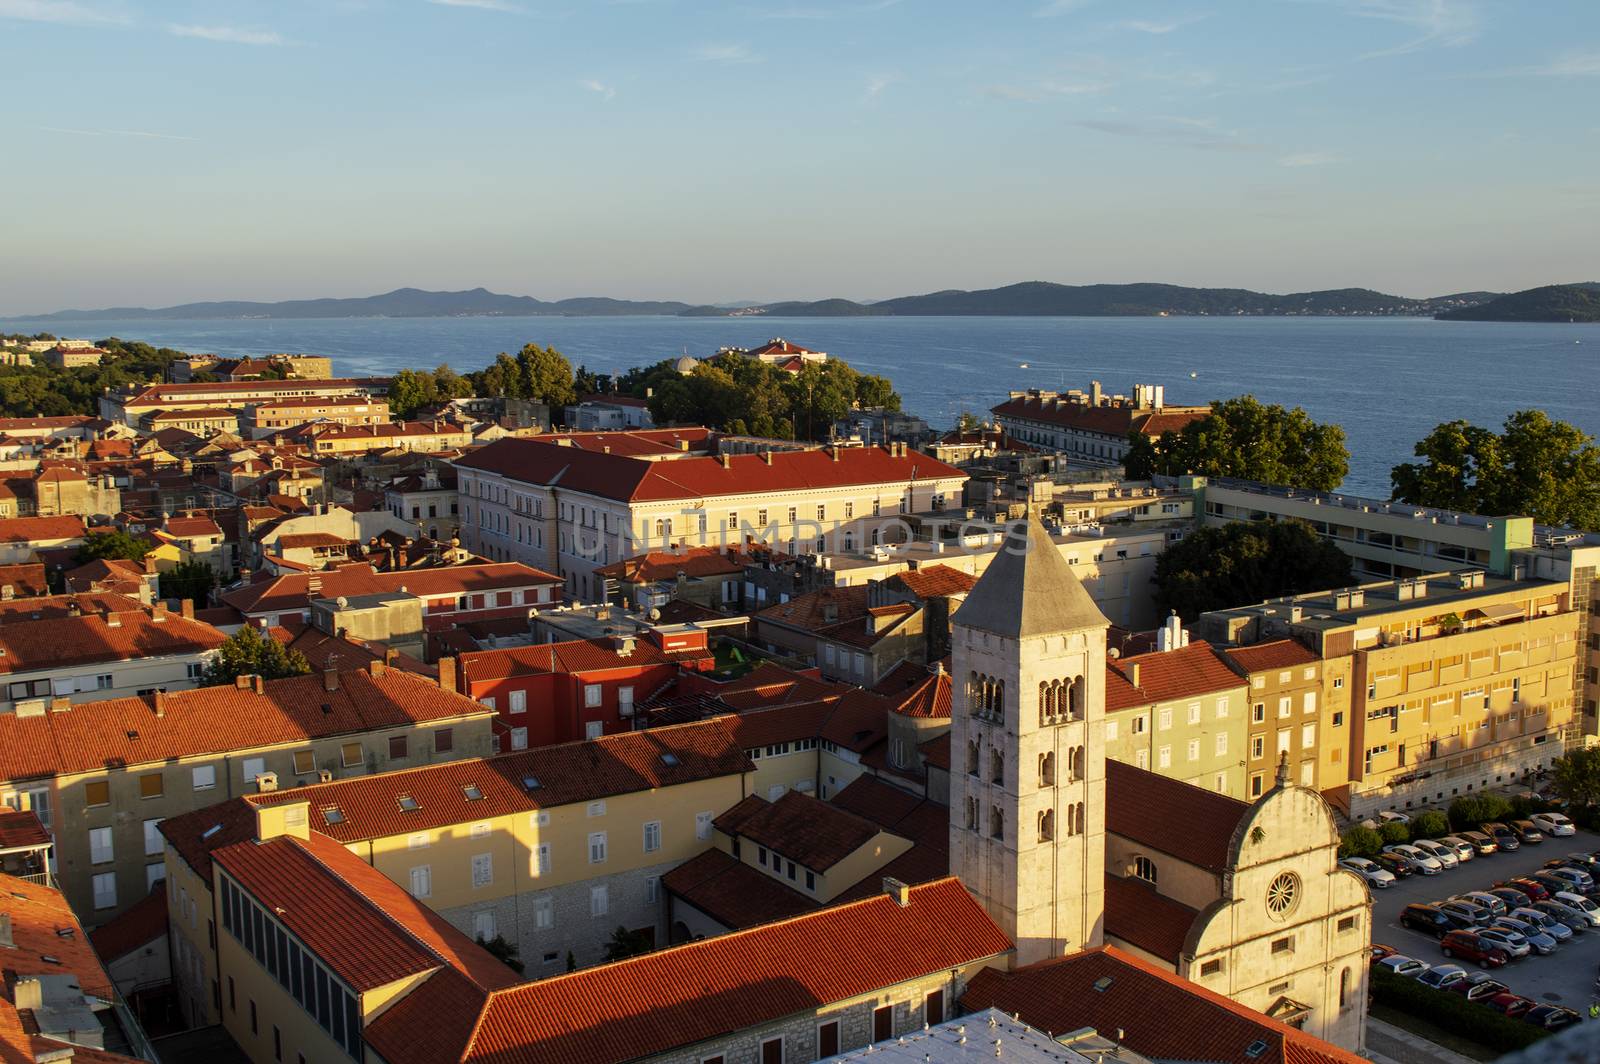 Zadar City Buildings by Mads_Hjorth_Jakobsen